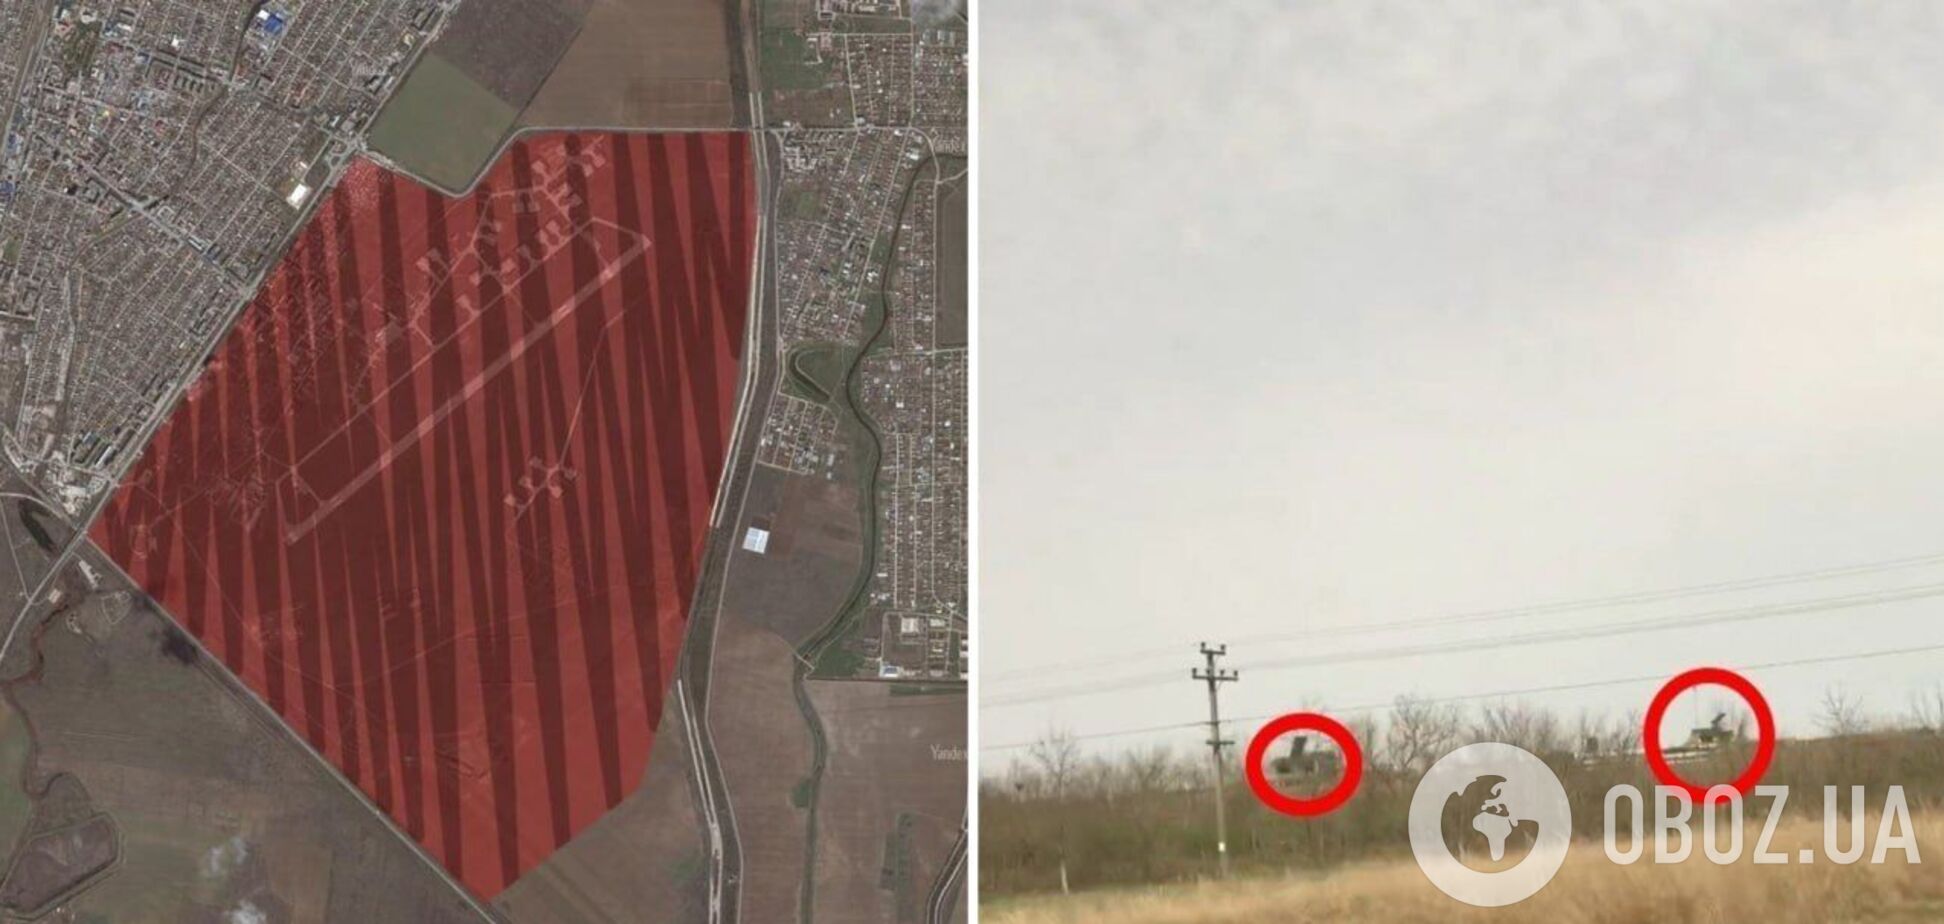 Украинские партизаны обнаружили на аэродроме Джанкоя незамаскированные системы ПВО. Фото